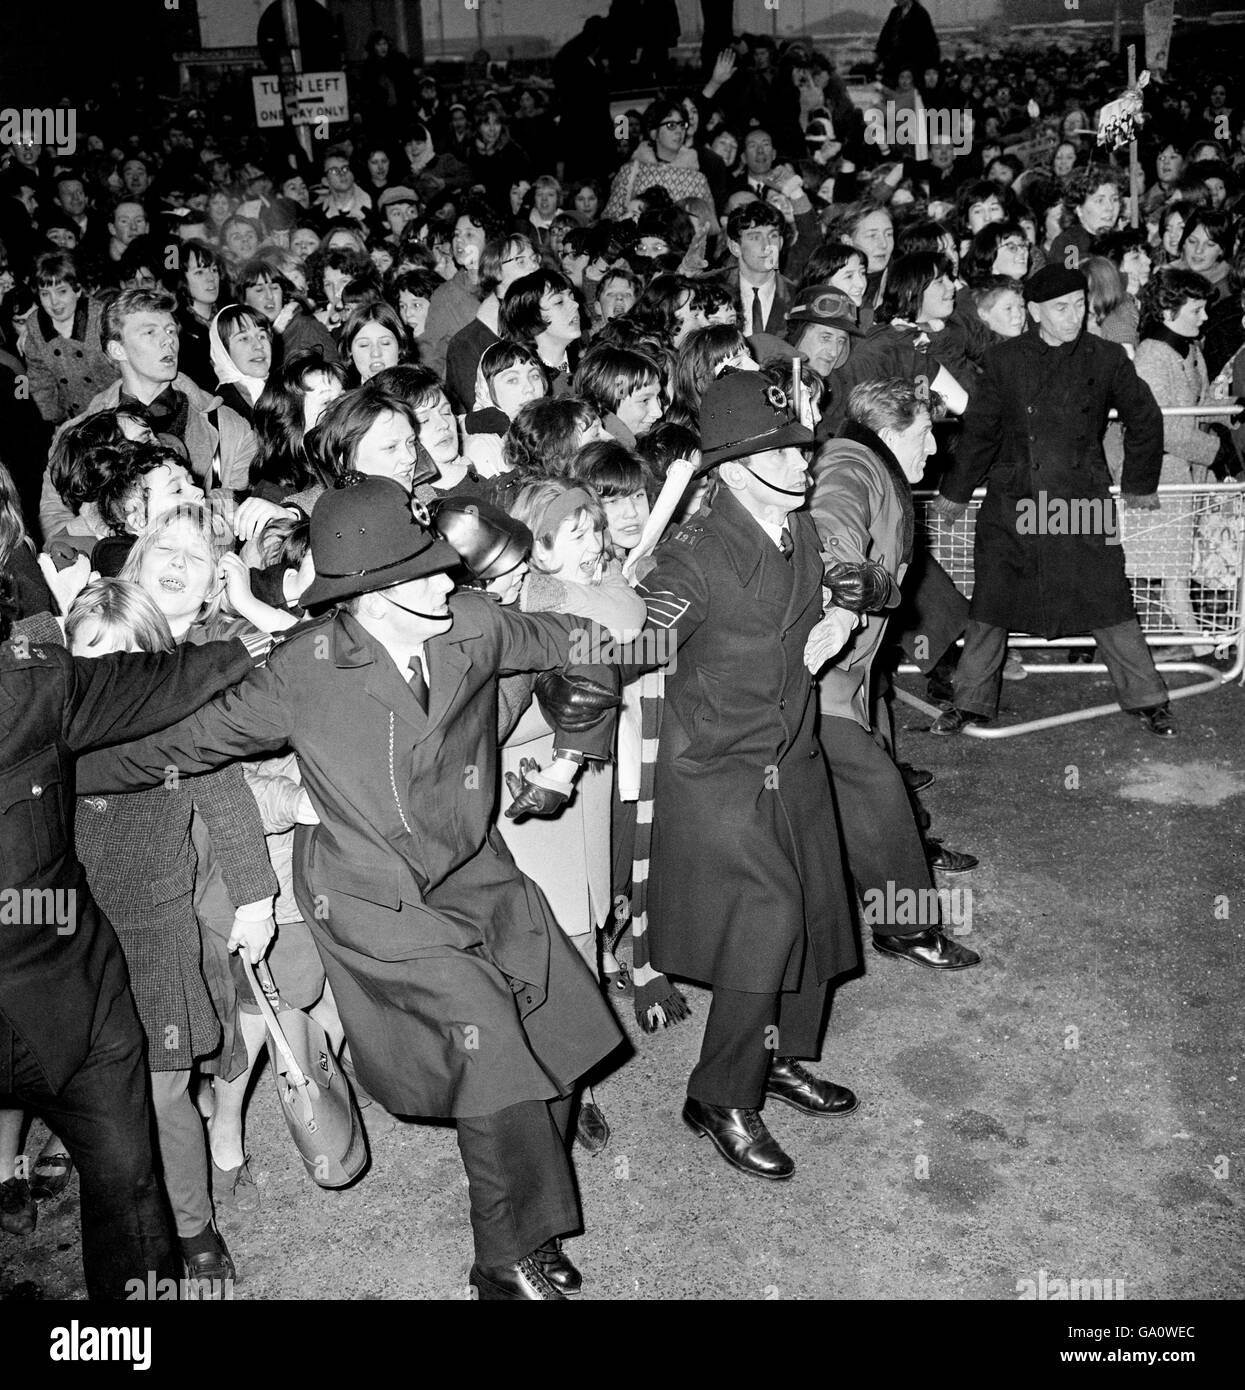 Die Fans drängen auf die zurückhaltenden verbundenen Arme einer Kette zusätzlicher Polizisten, die am Flughafen London Dienst hatten, als die Beatles von einer USA-Tournee zurückkehrten. Stockfoto